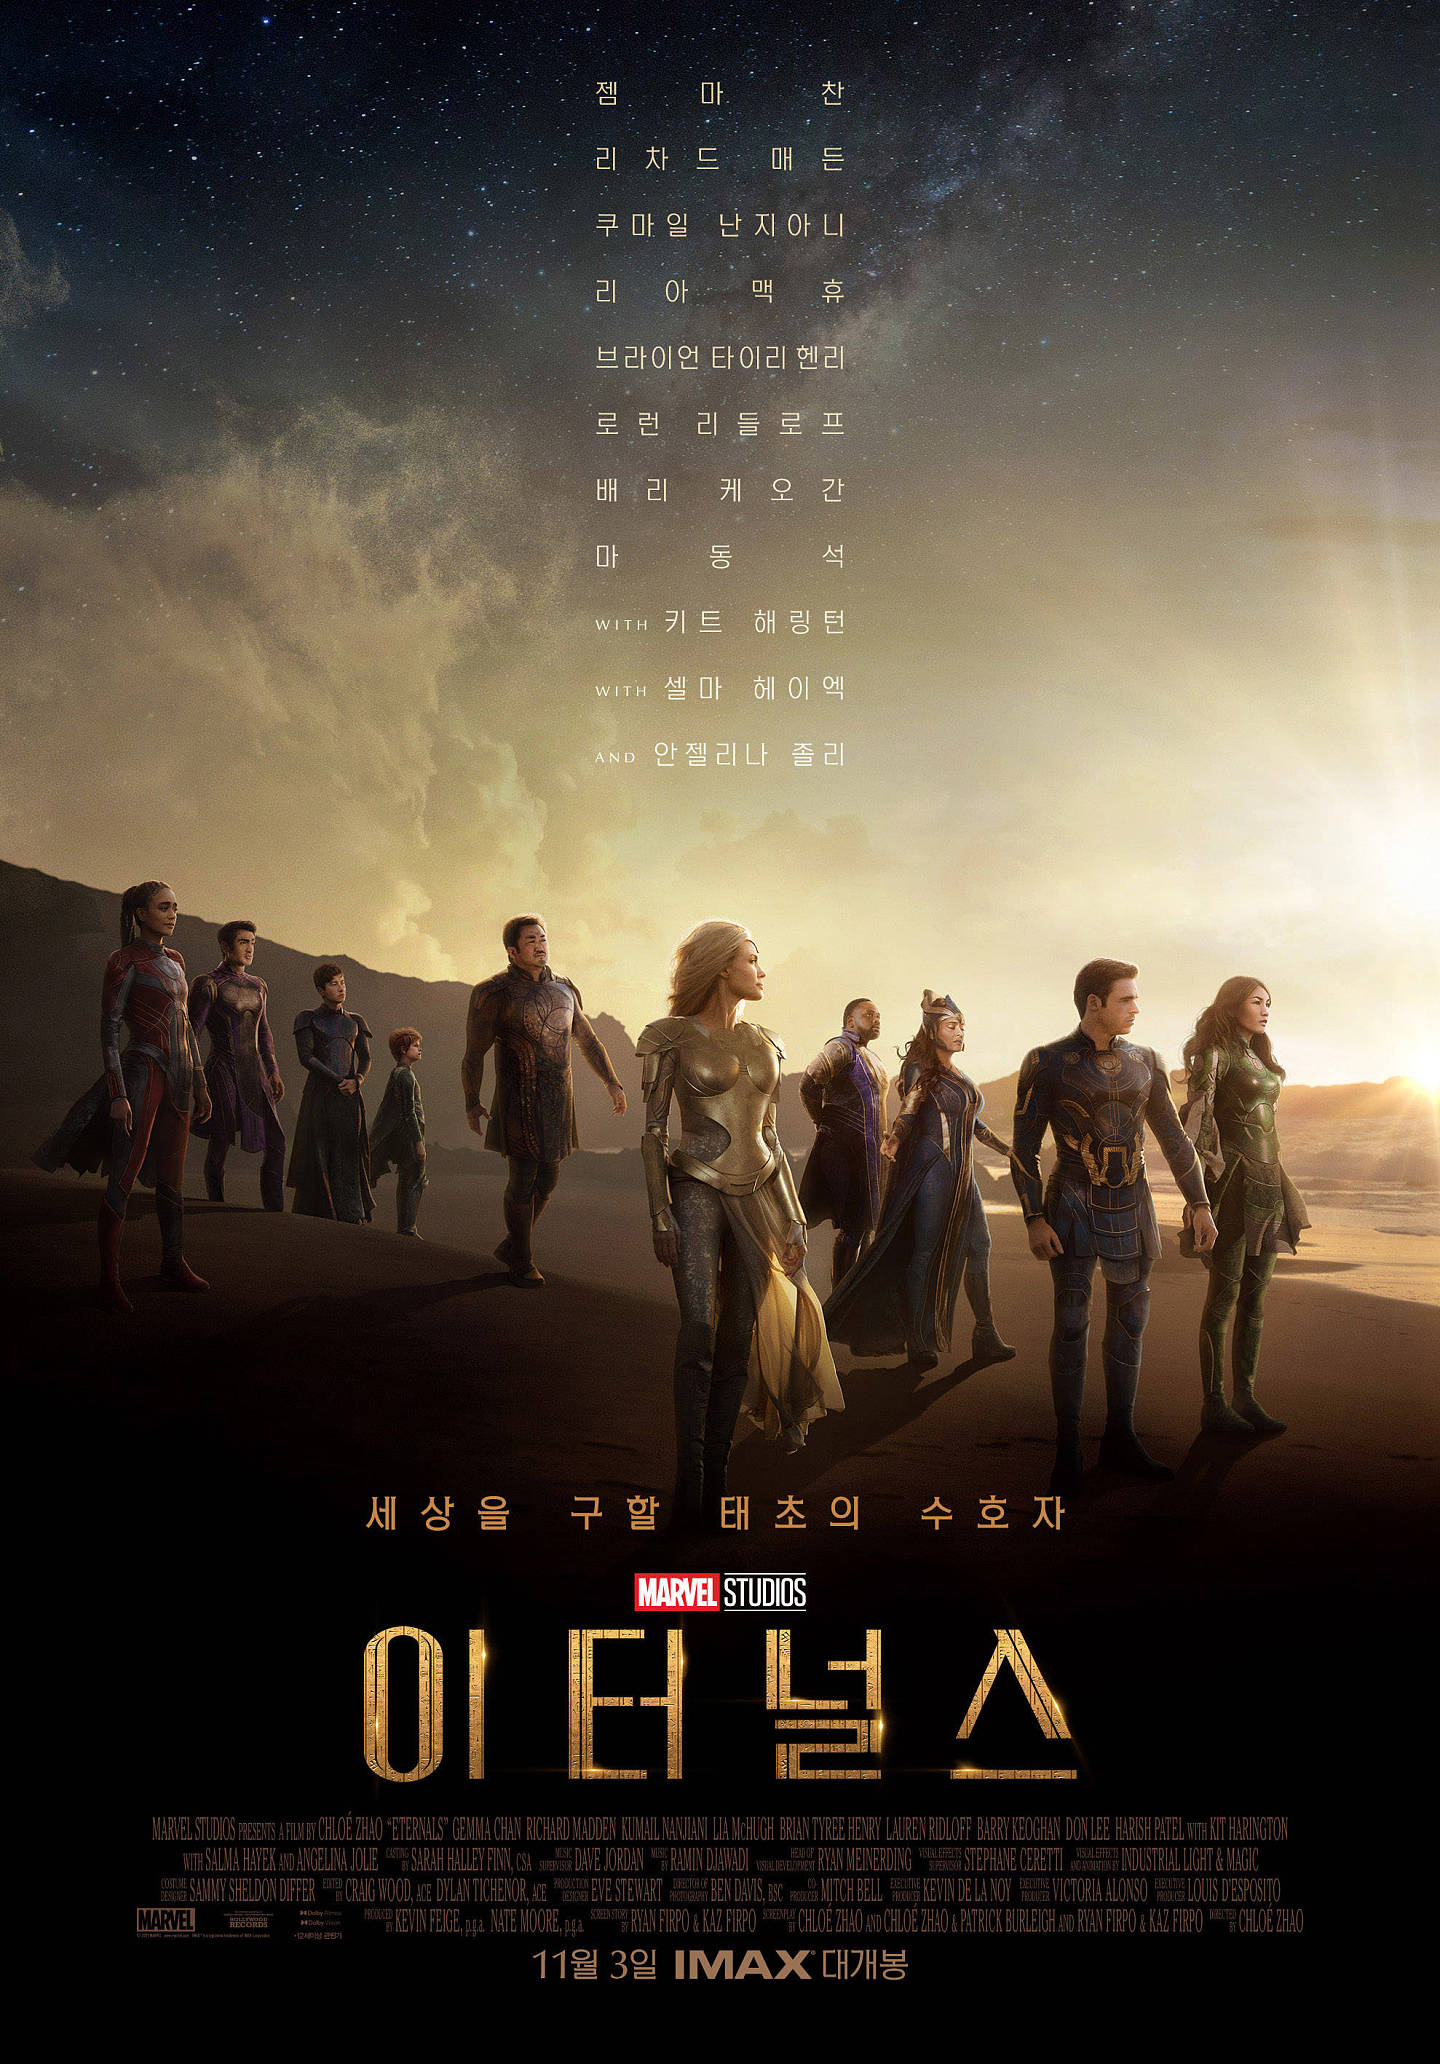 美国电影《永恒族》夺得韩国周末票房冠军 《沙丘》名列第二位 - 1